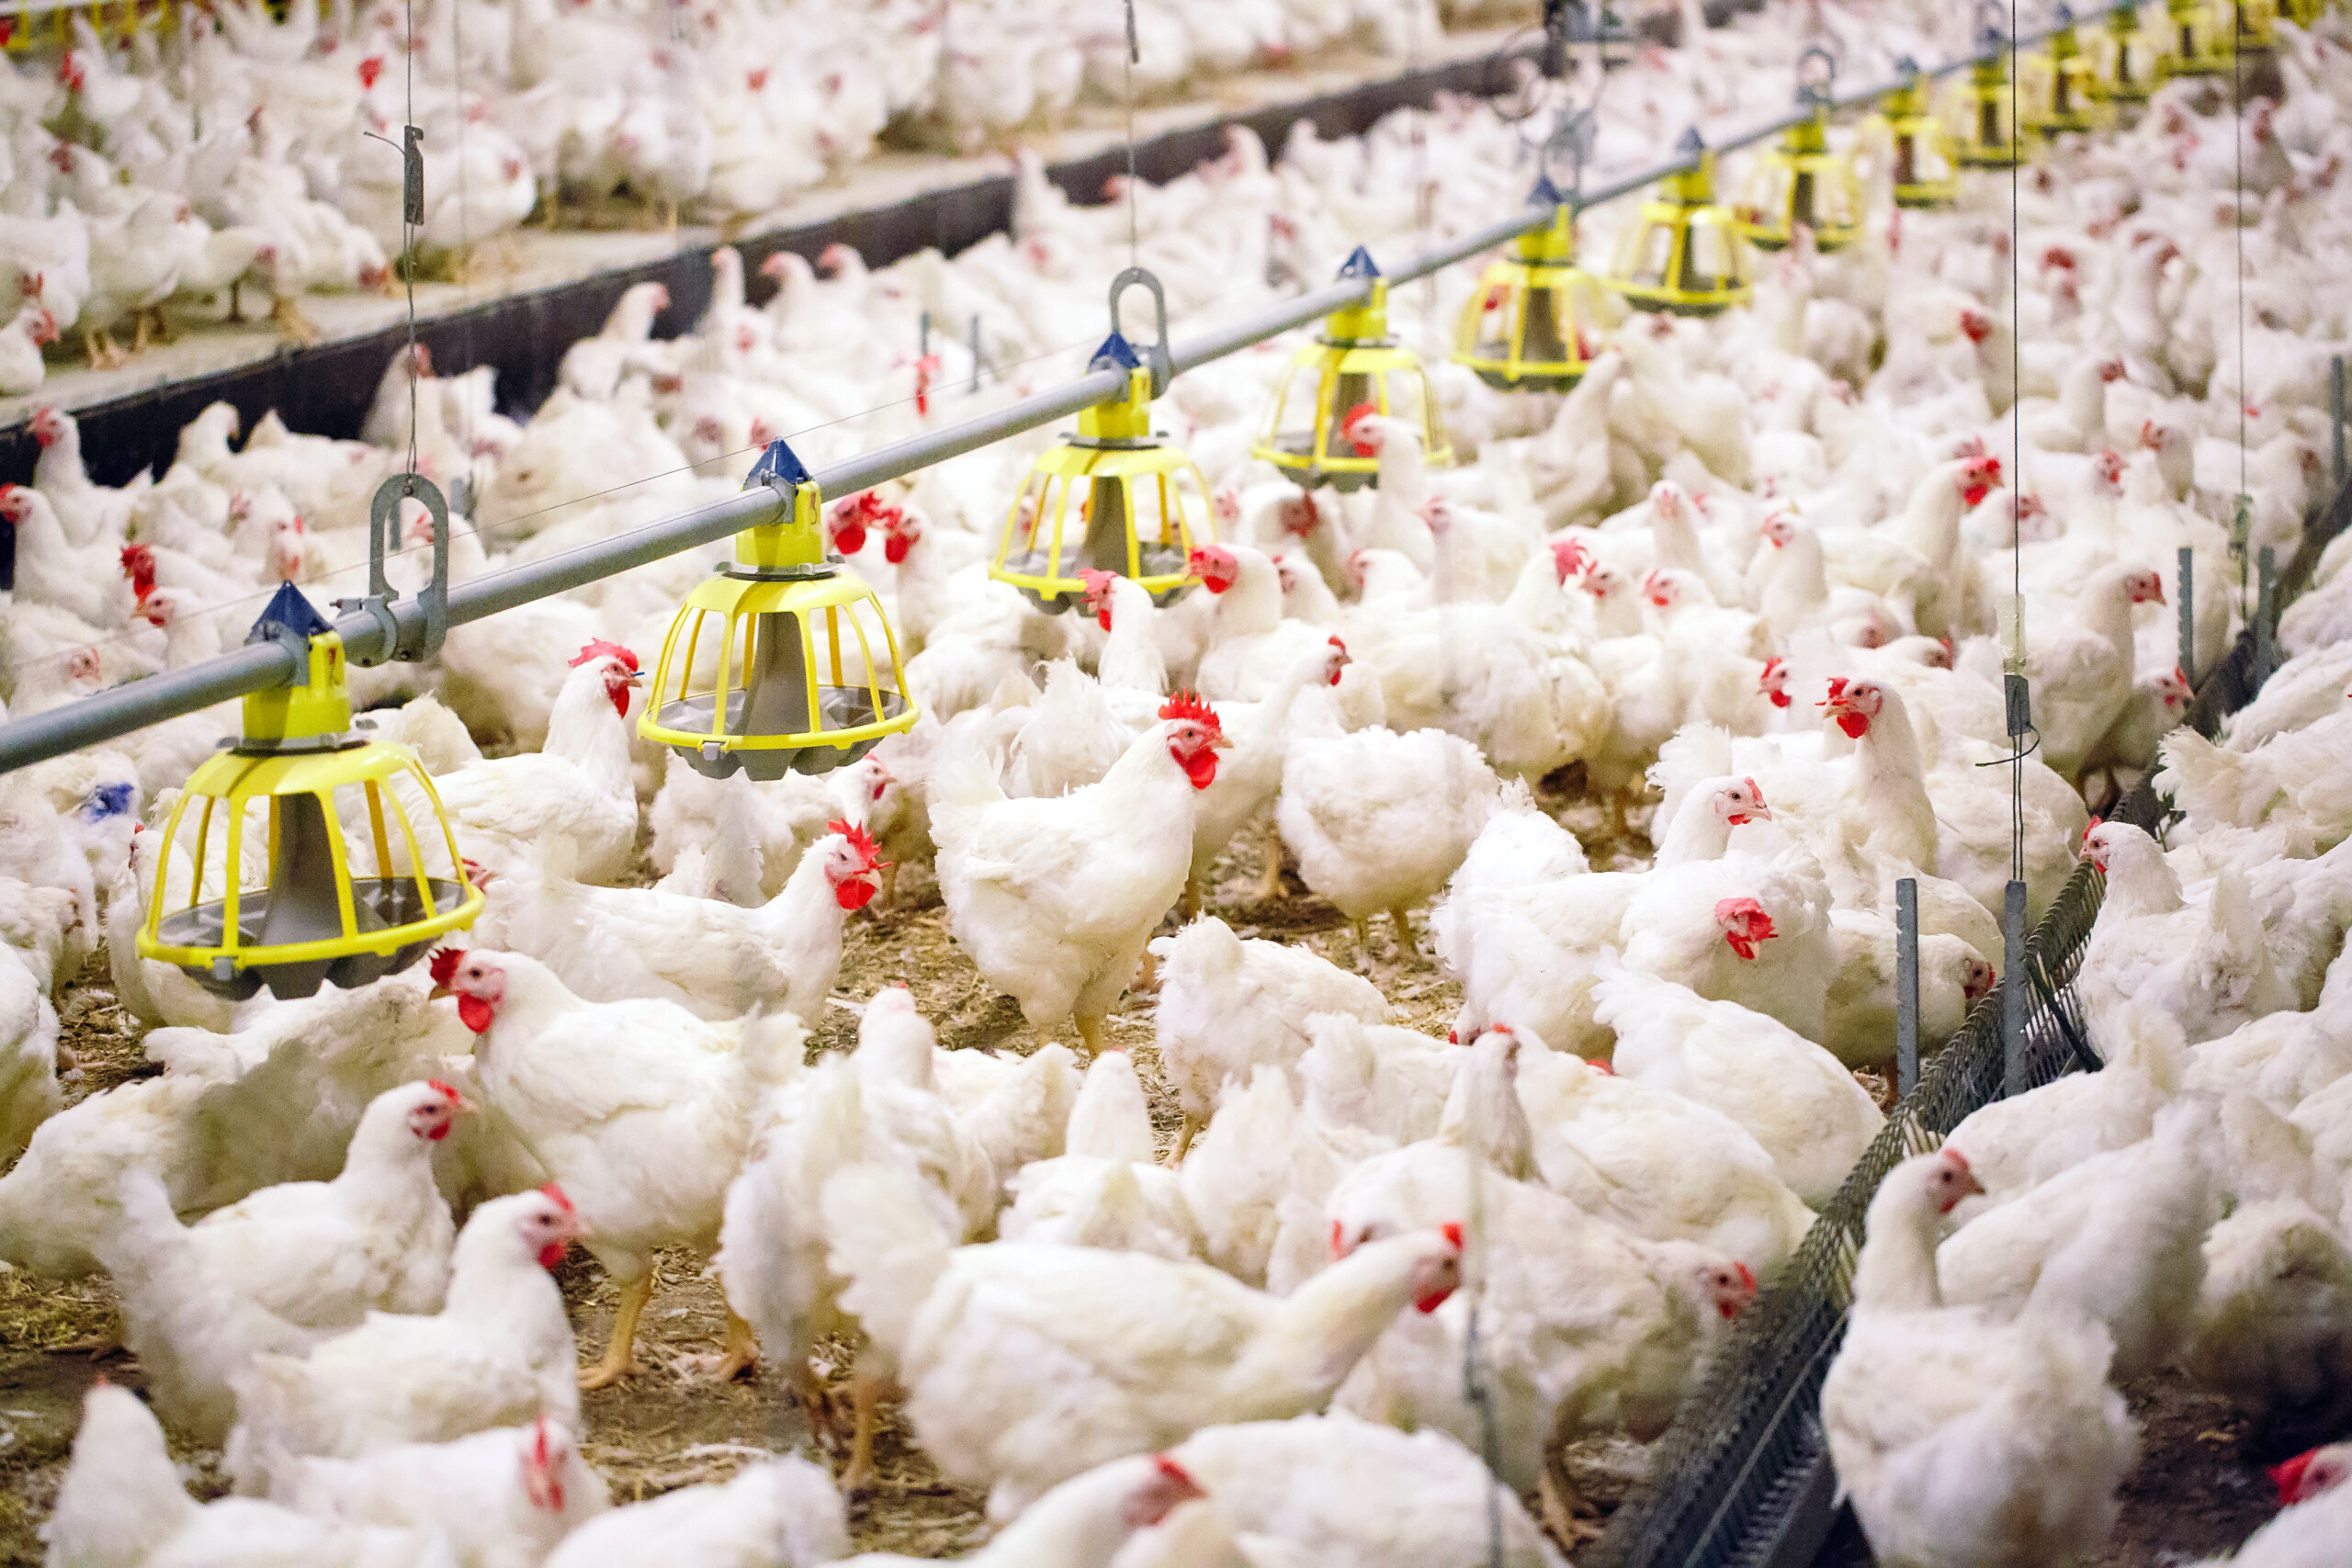 Produção brasileira de frango ficará abaixo do previsto, dia ABPA; empresas adotam medidas para reduzir oferta | Crédito: Shutterstock